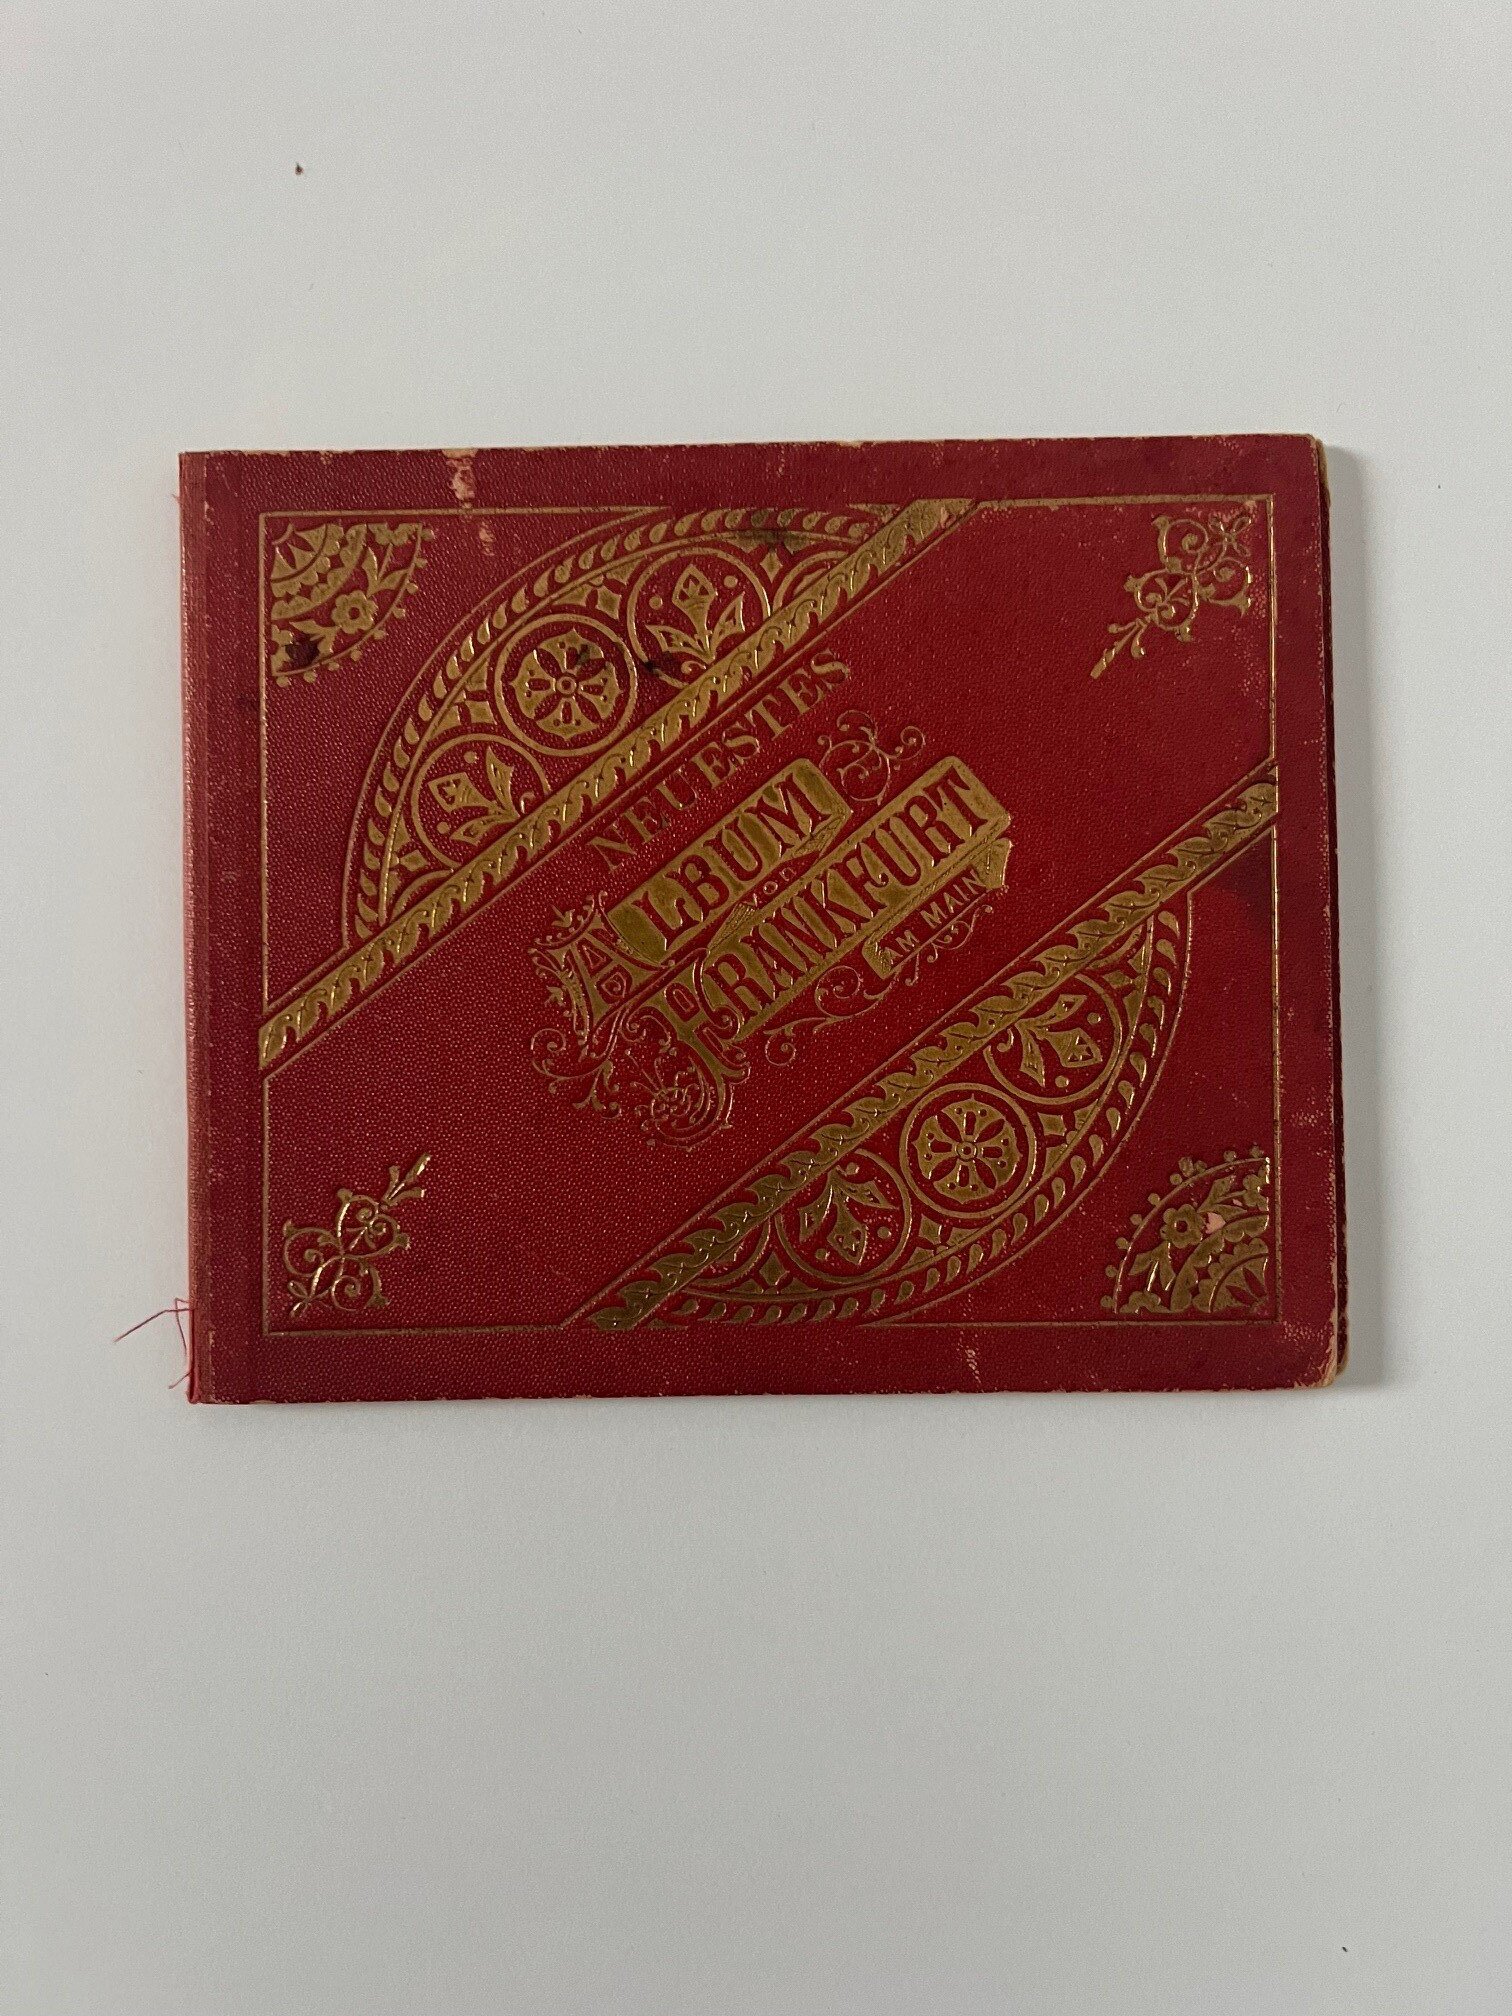 Philipp Frey & Co., Neustes Album von Frankfurt am Main, Leporello mit 18 farbigen Lithographien, dat. 1901. (Taunus-Rhein-Main - Regionalgeschichtliche Sammlung Dr. Stefan Naas CC BY-NC-SA)